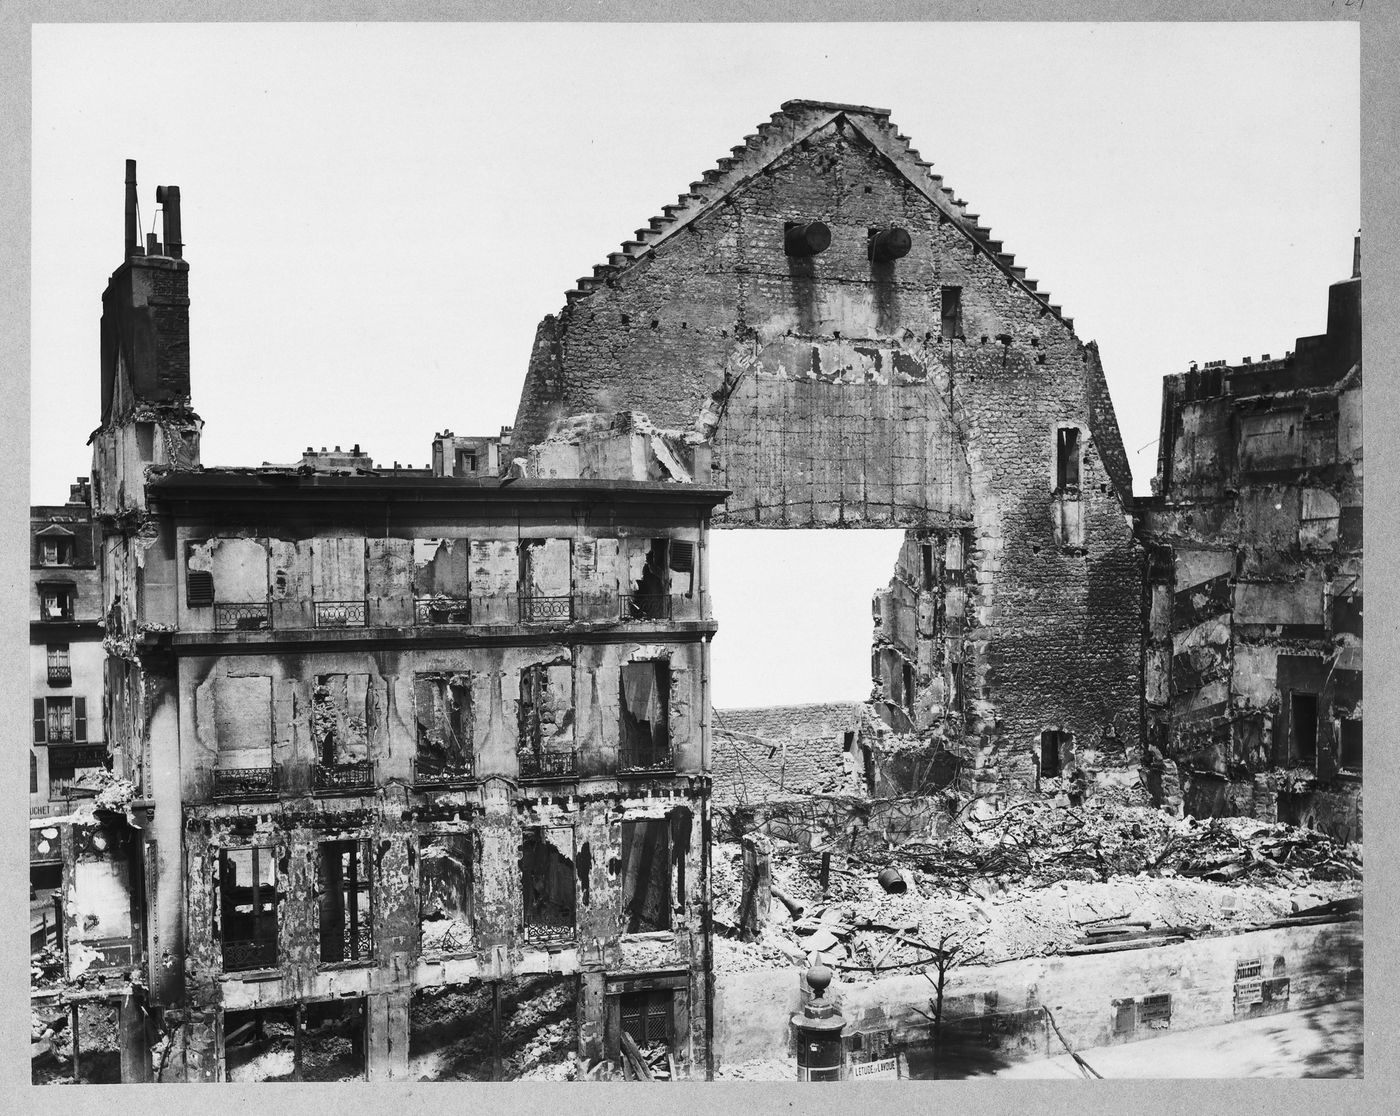 View of the ruins of the Théâtre de la Porte Saint-Martin after the Paris Commune, Paris, France